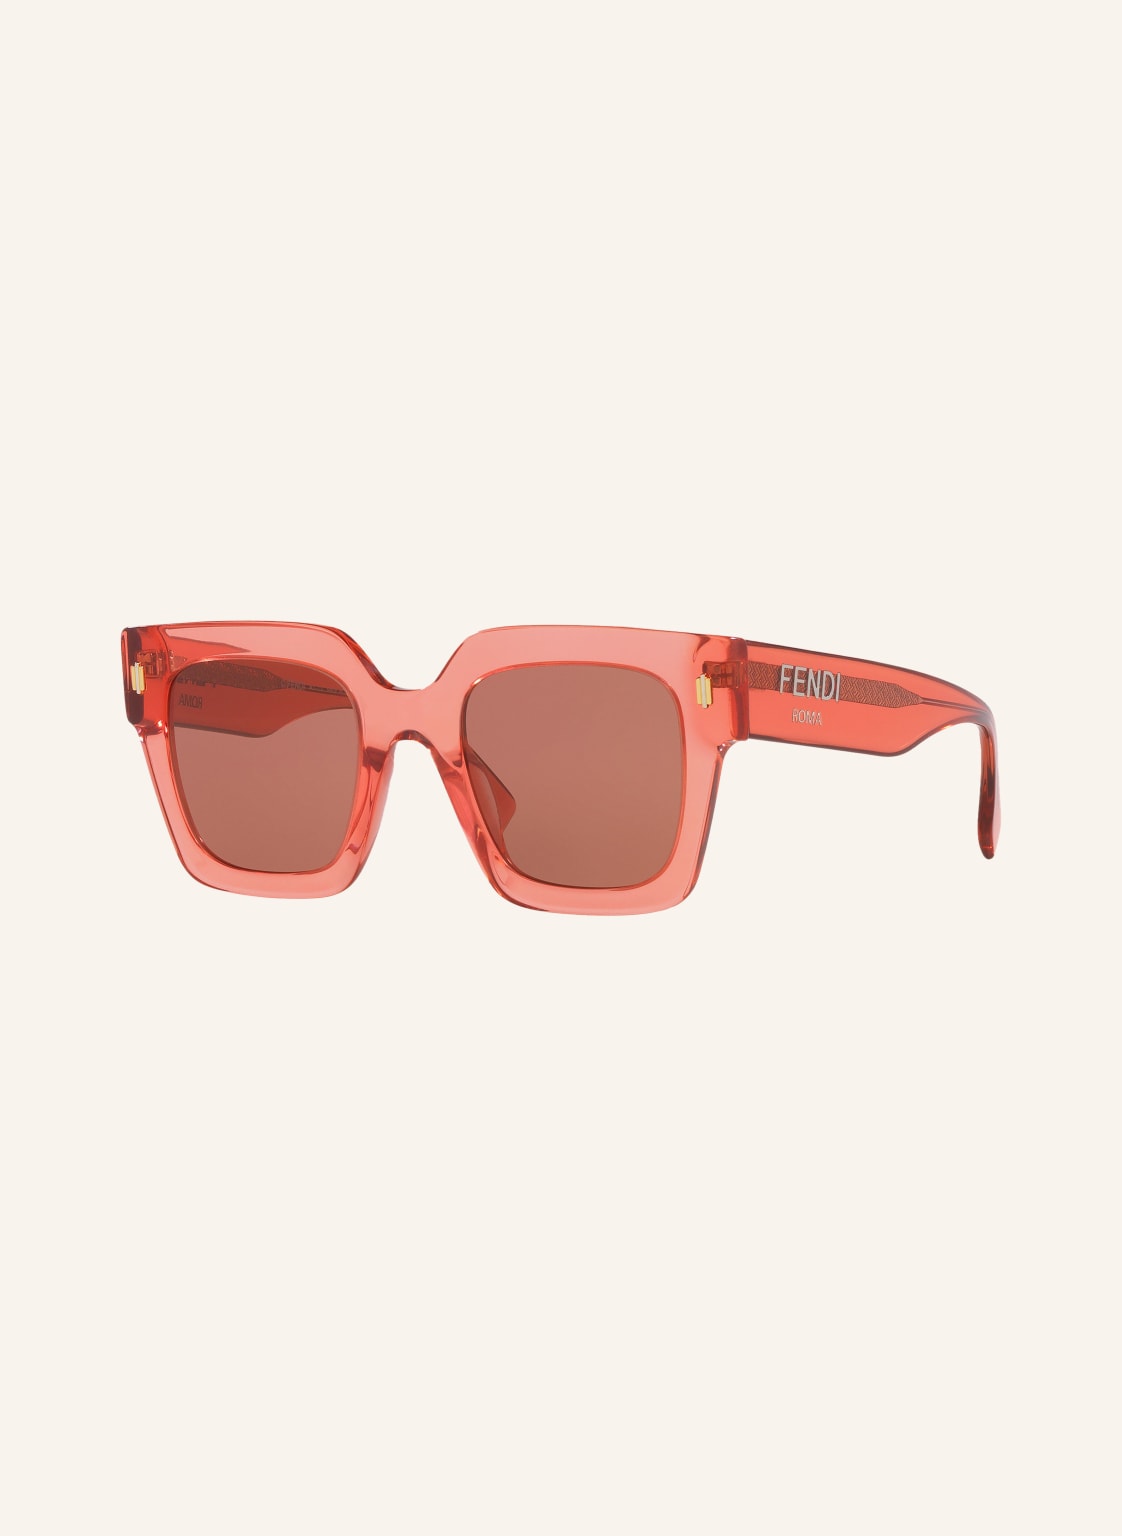 Fendi Okulary Przeciwsłoneczne fn000719 pink